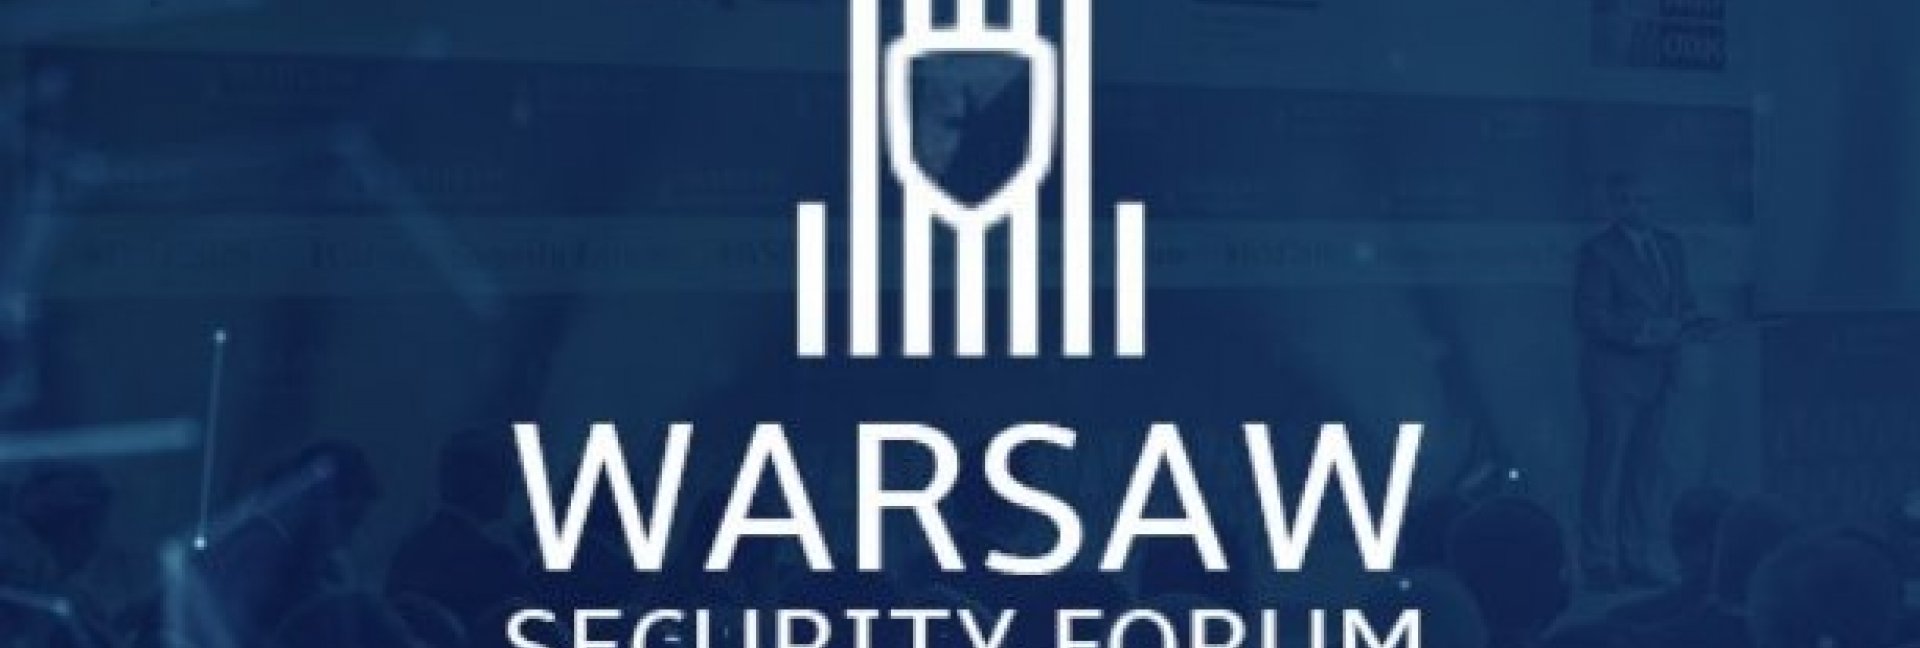 7. Edycja Warsaw Security Forum za nami